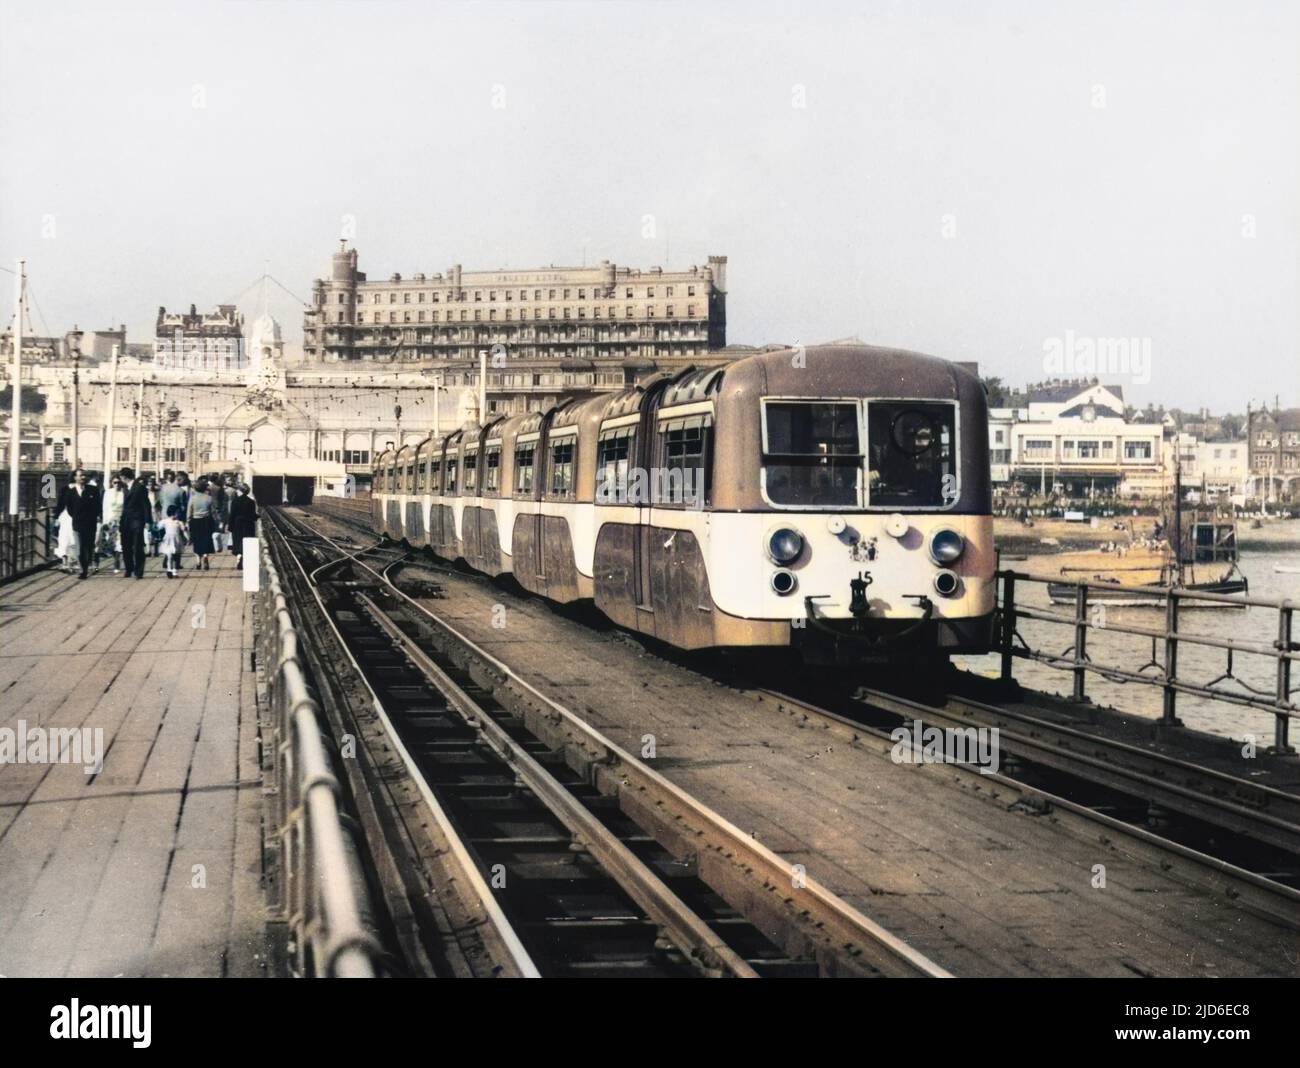 Il treno elettrico porta i passeggeri alla fine del molo lungo un miglio e mezzo, il più lungo del mondo. Versione colorata di : 10144156 Data: 1950s Foto Stock